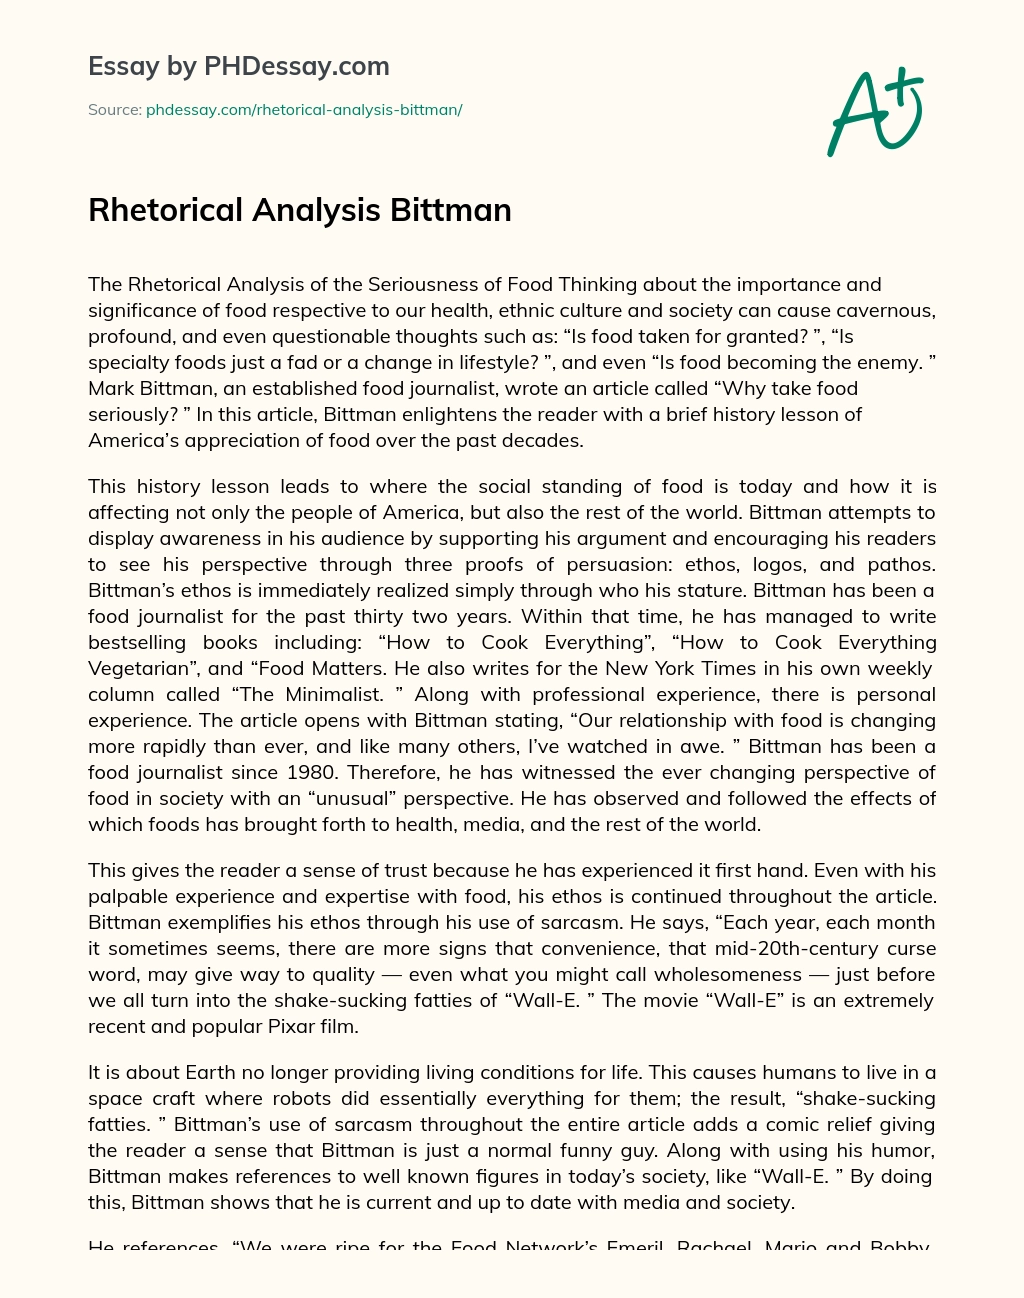 Rhetorical Analysis Bittman essay